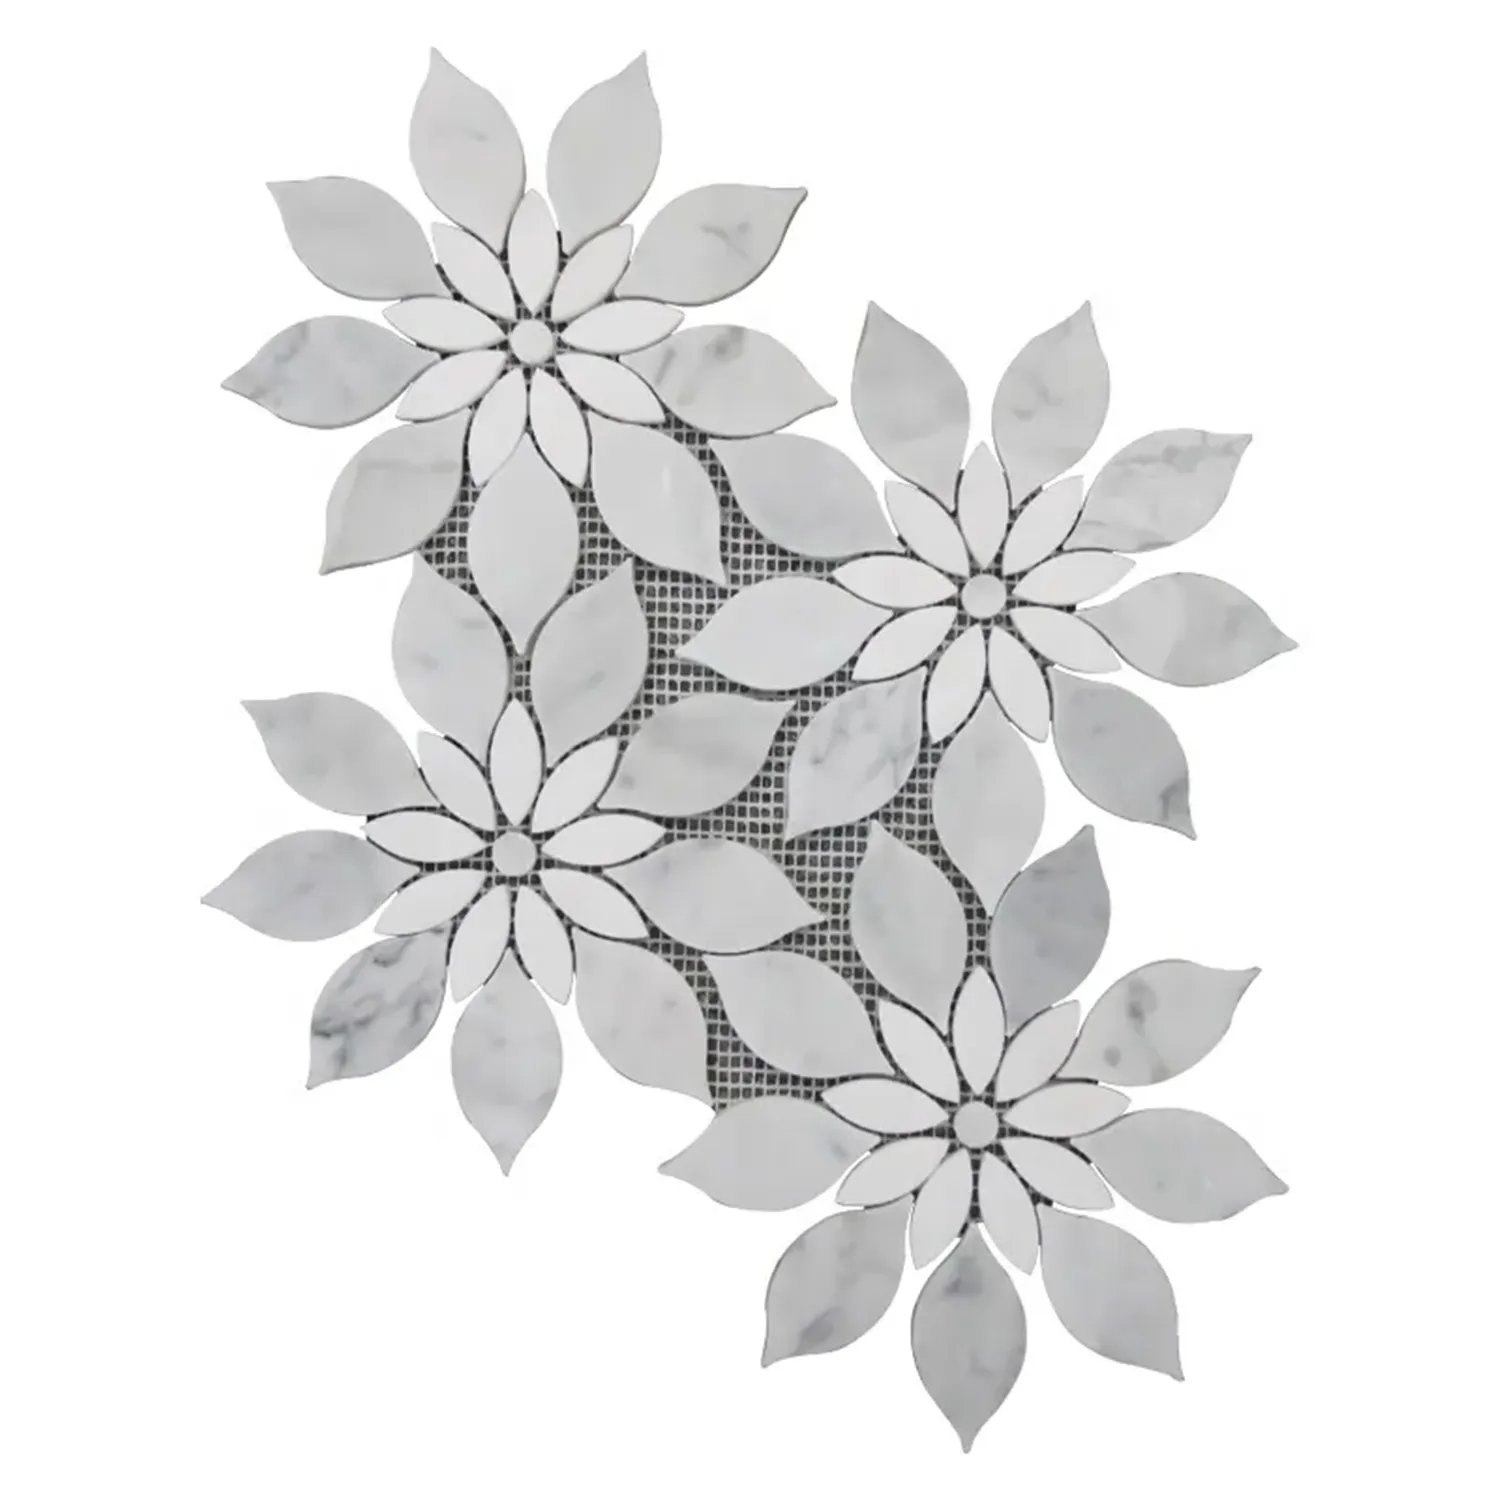 Moderno Natural Arabescato blanco mármol ducha piso Meash respaldado mosaico azulejos patrón mármol flor forma mosaico azulejos